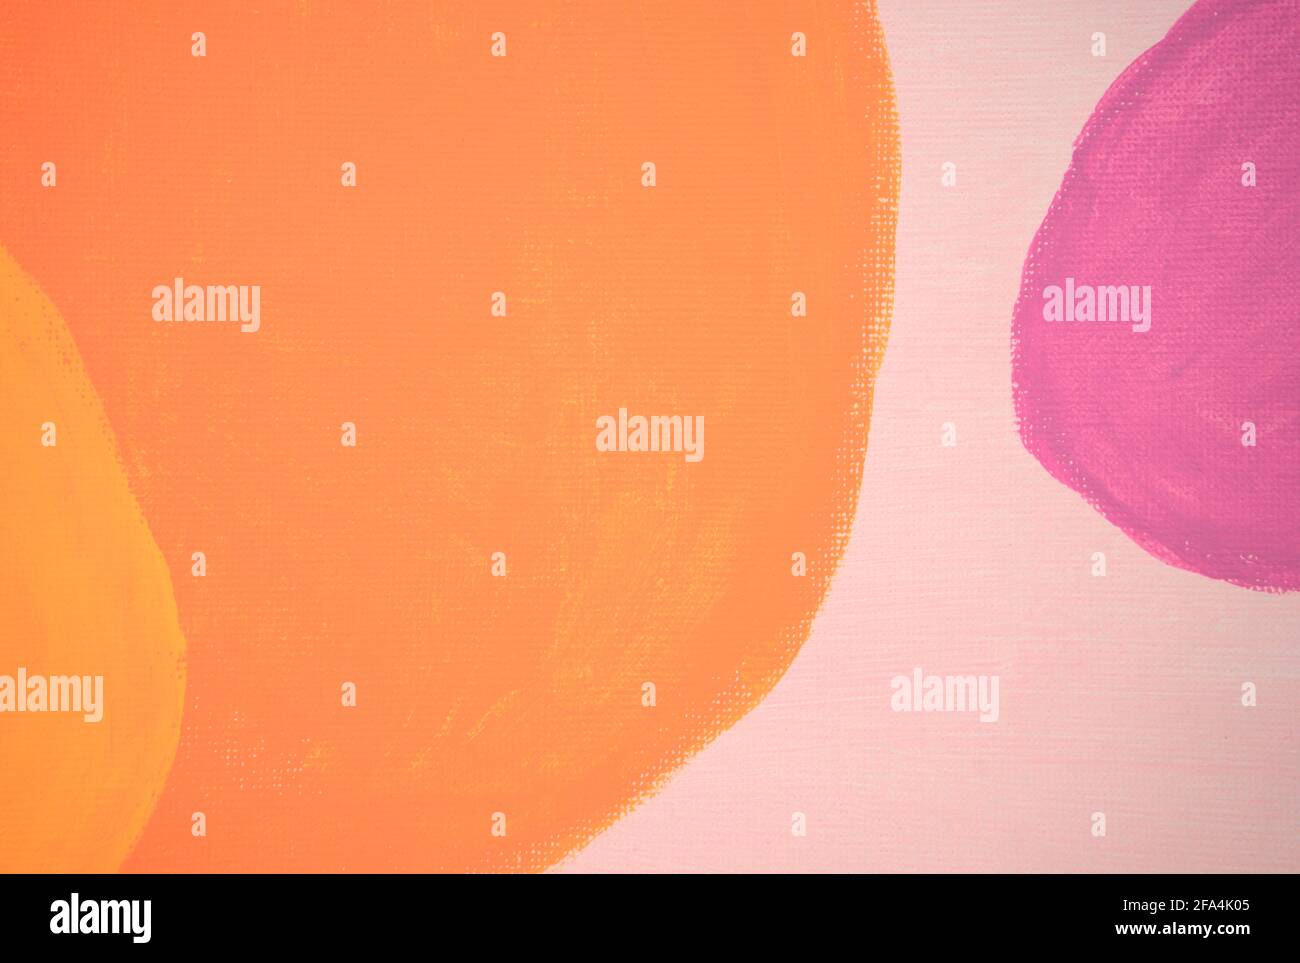 Handgefertigte, abstrakte Boho Wand Art Stil Hintergrund. Skandinavische, nordisch-moderne, minimalistische Kunstwerke. Neutral, rosa Pastellfarben, blassviolett, warmgelb. Stockfoto